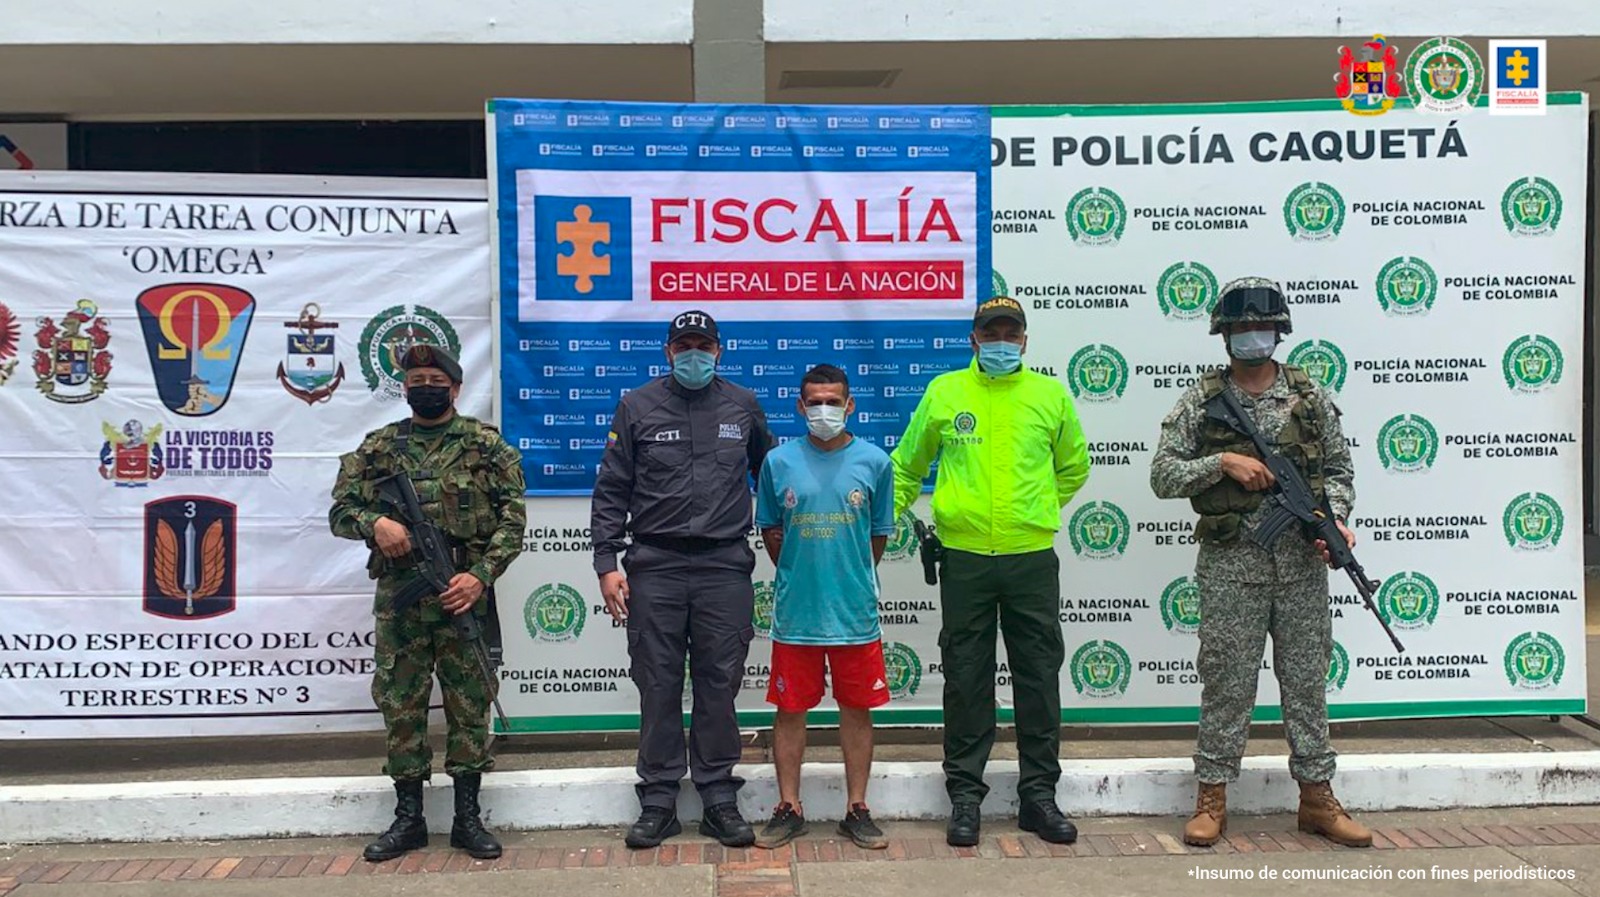 Colombia Fiscalia Homicide